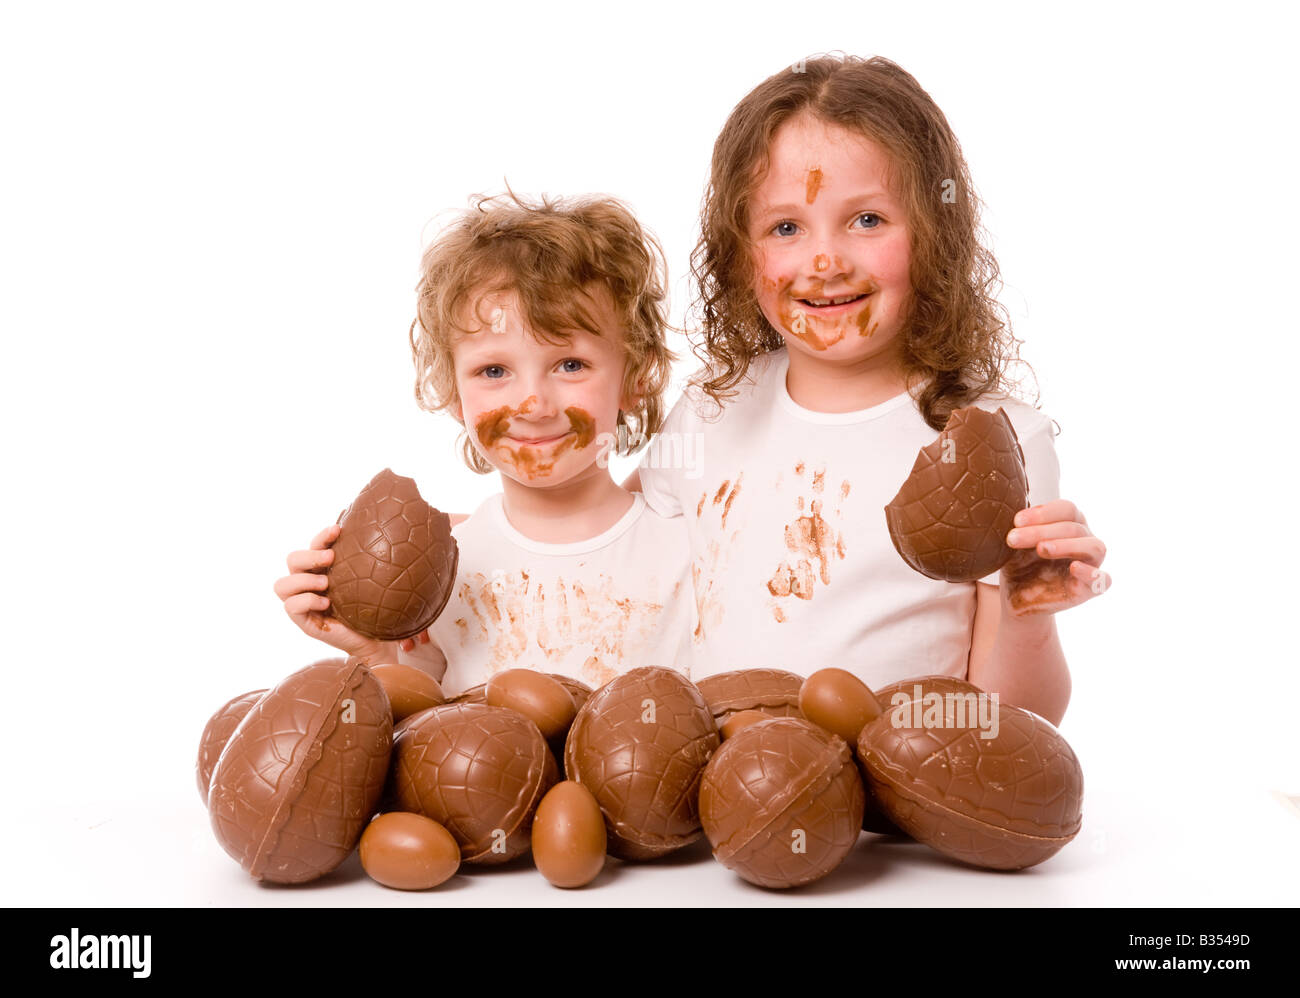 2 jeunes enfants avec du chocolat sur leur visage et leurs vêtements, chacun tenant un morceau d'oeuf de chocolat, avec beaucoup plus d'oeufs de Pâques au premier plan. Banque D'Images